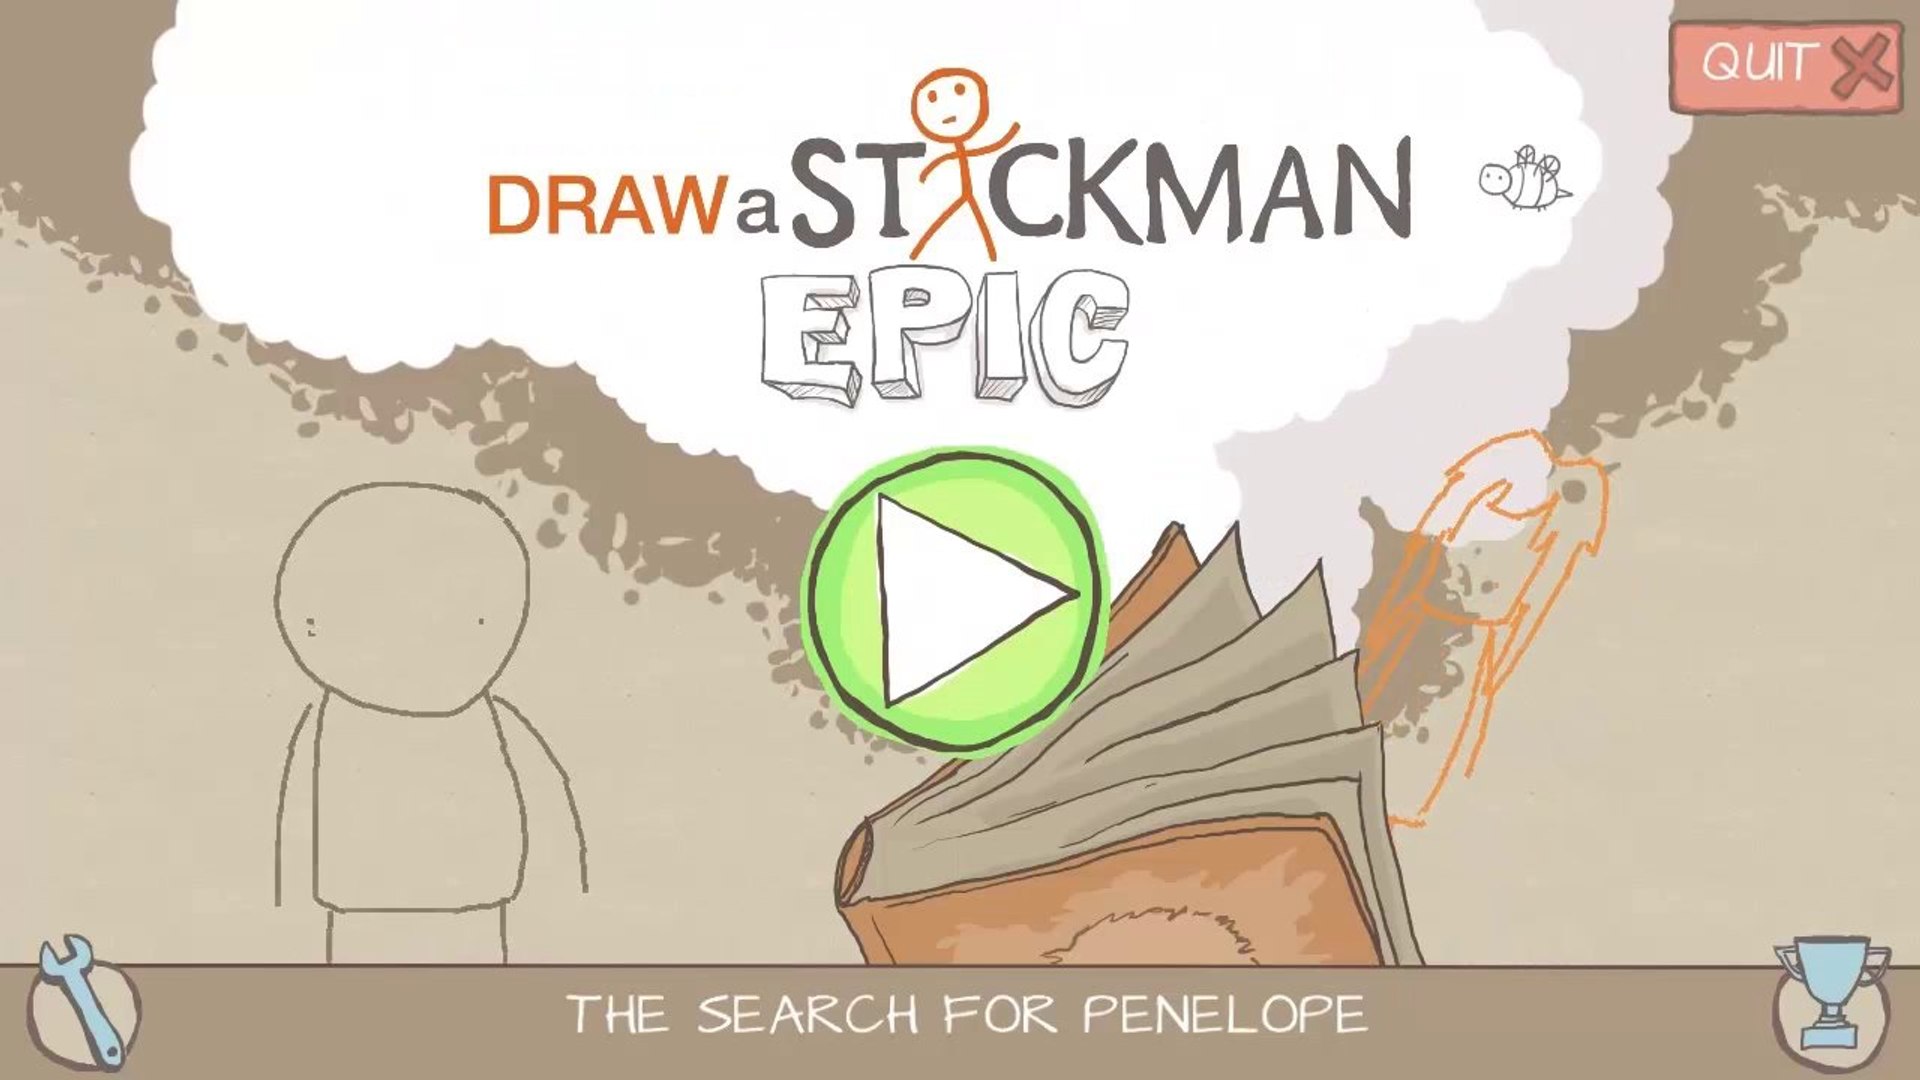 7 Draw A Stickman Epic 2 ideas